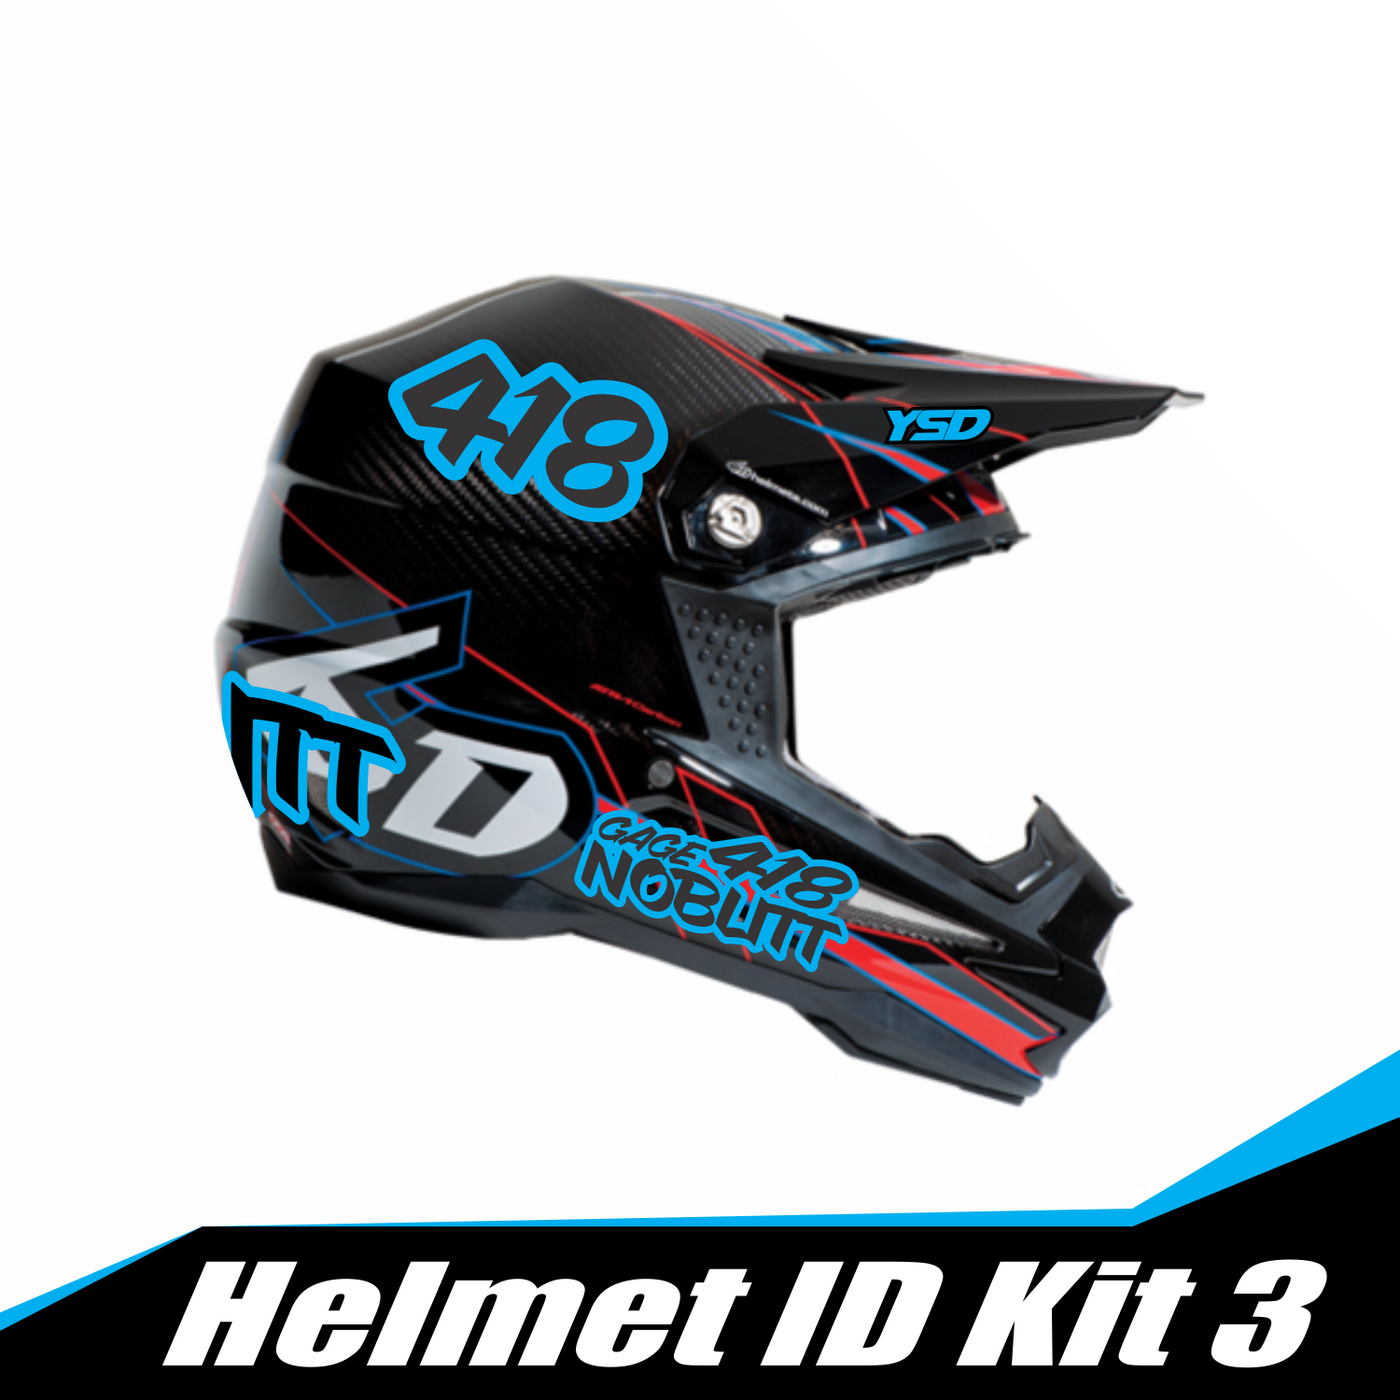 Helmet ID kit 3 - Y&S Designs, LLC